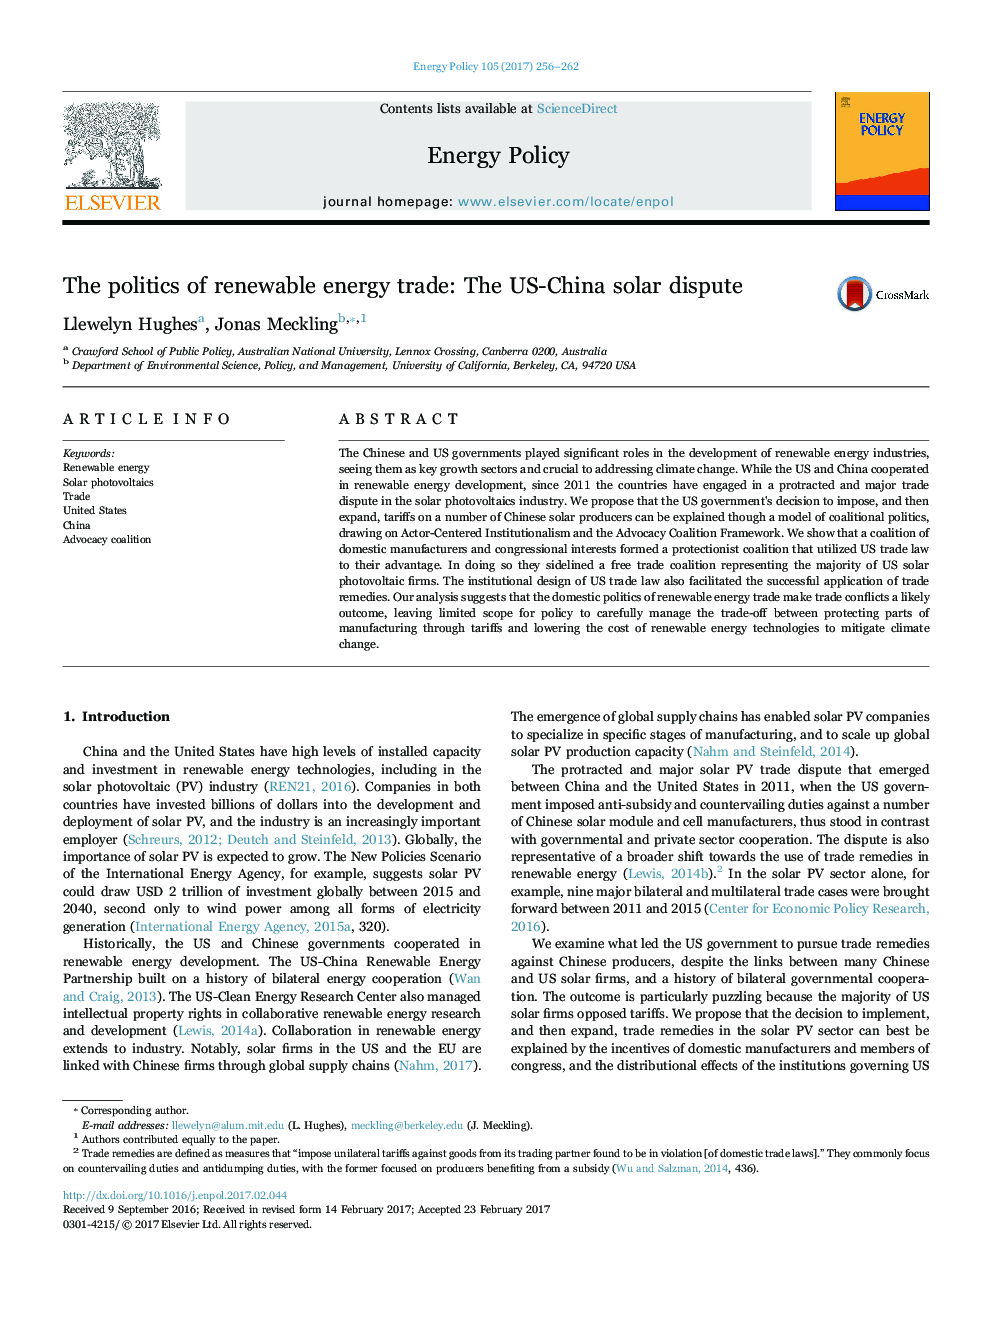 سیاست تجارت انرژی تجدید پذیر: اختلاف خورشید آمریکا و چین 